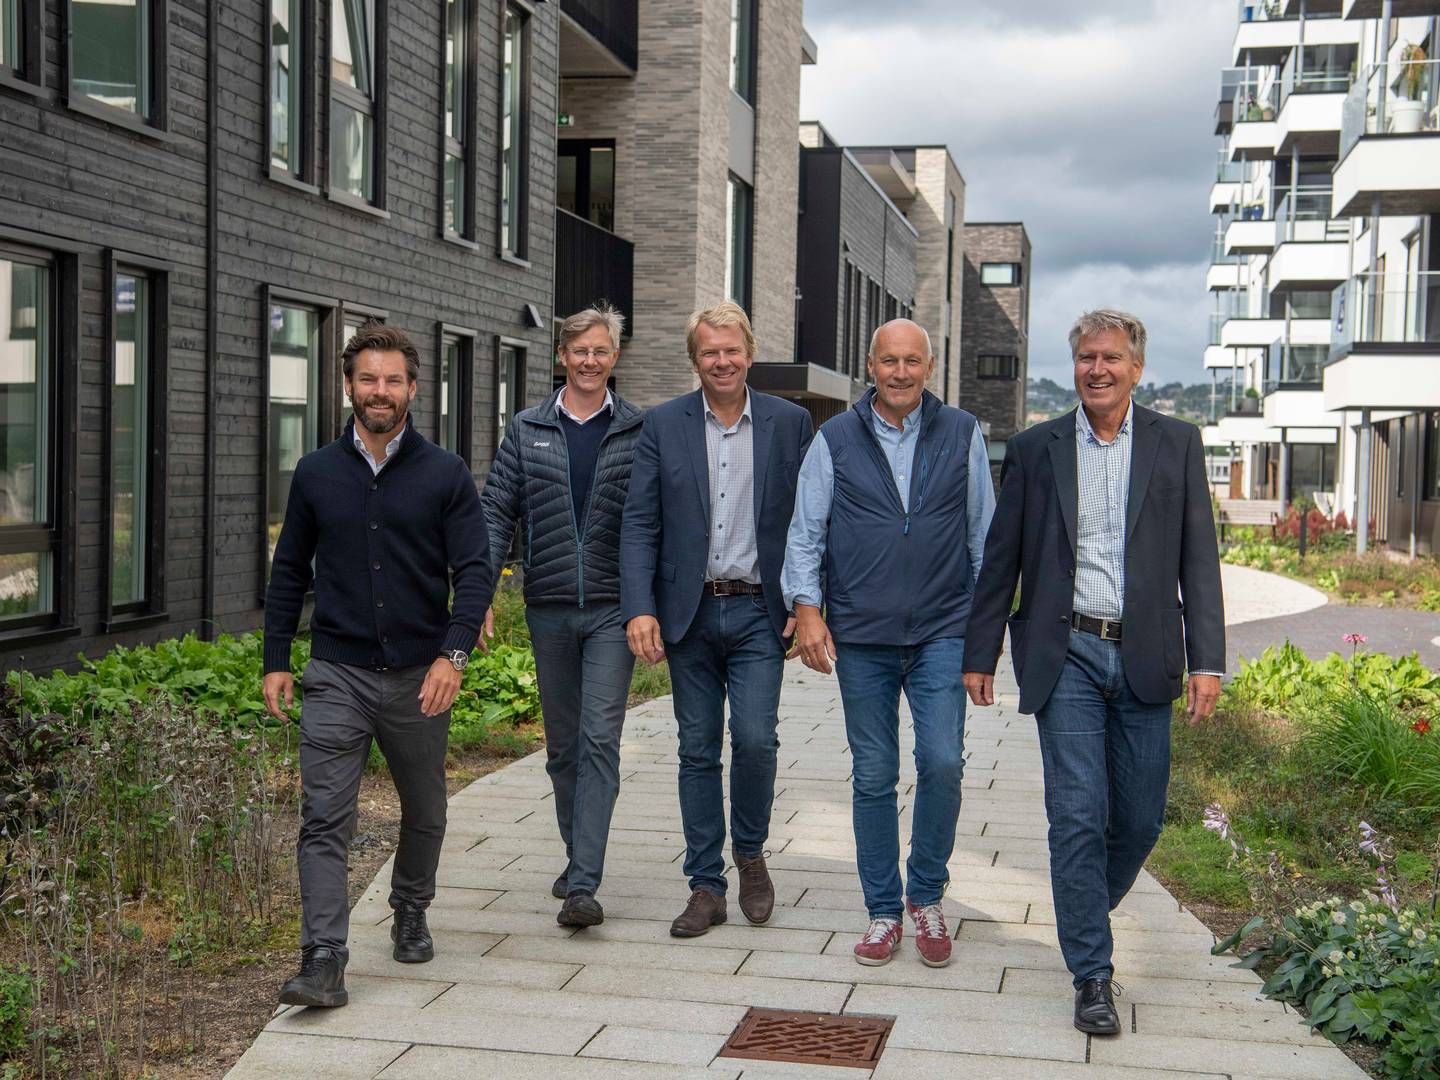 GJØR STORHANDEL I KRISTIANSAND: Fra venstre: Anders Buchardt, Emil Paaske, Jostein Haugen, Terje Ragnar Hansen, Jan Omli Larsen | Photo: Malling & Co